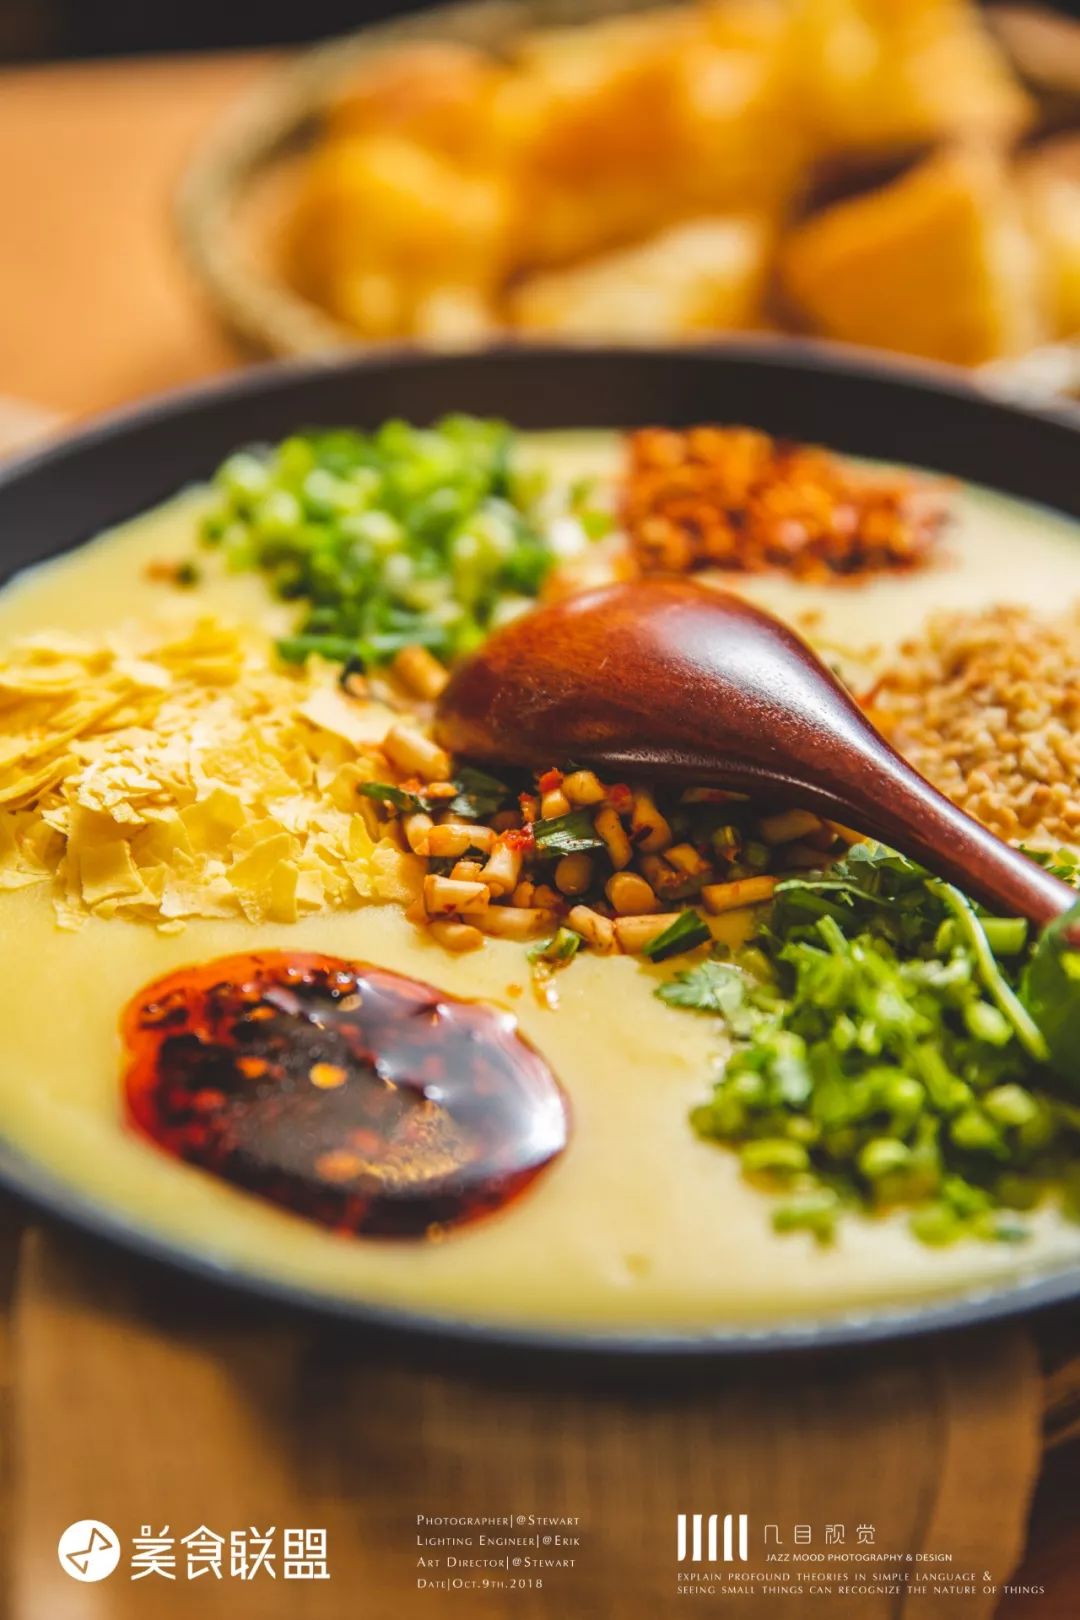 [今日早餐]云南菜市场里的稀豆粉与菠菜油条 - 哔哩哔哩